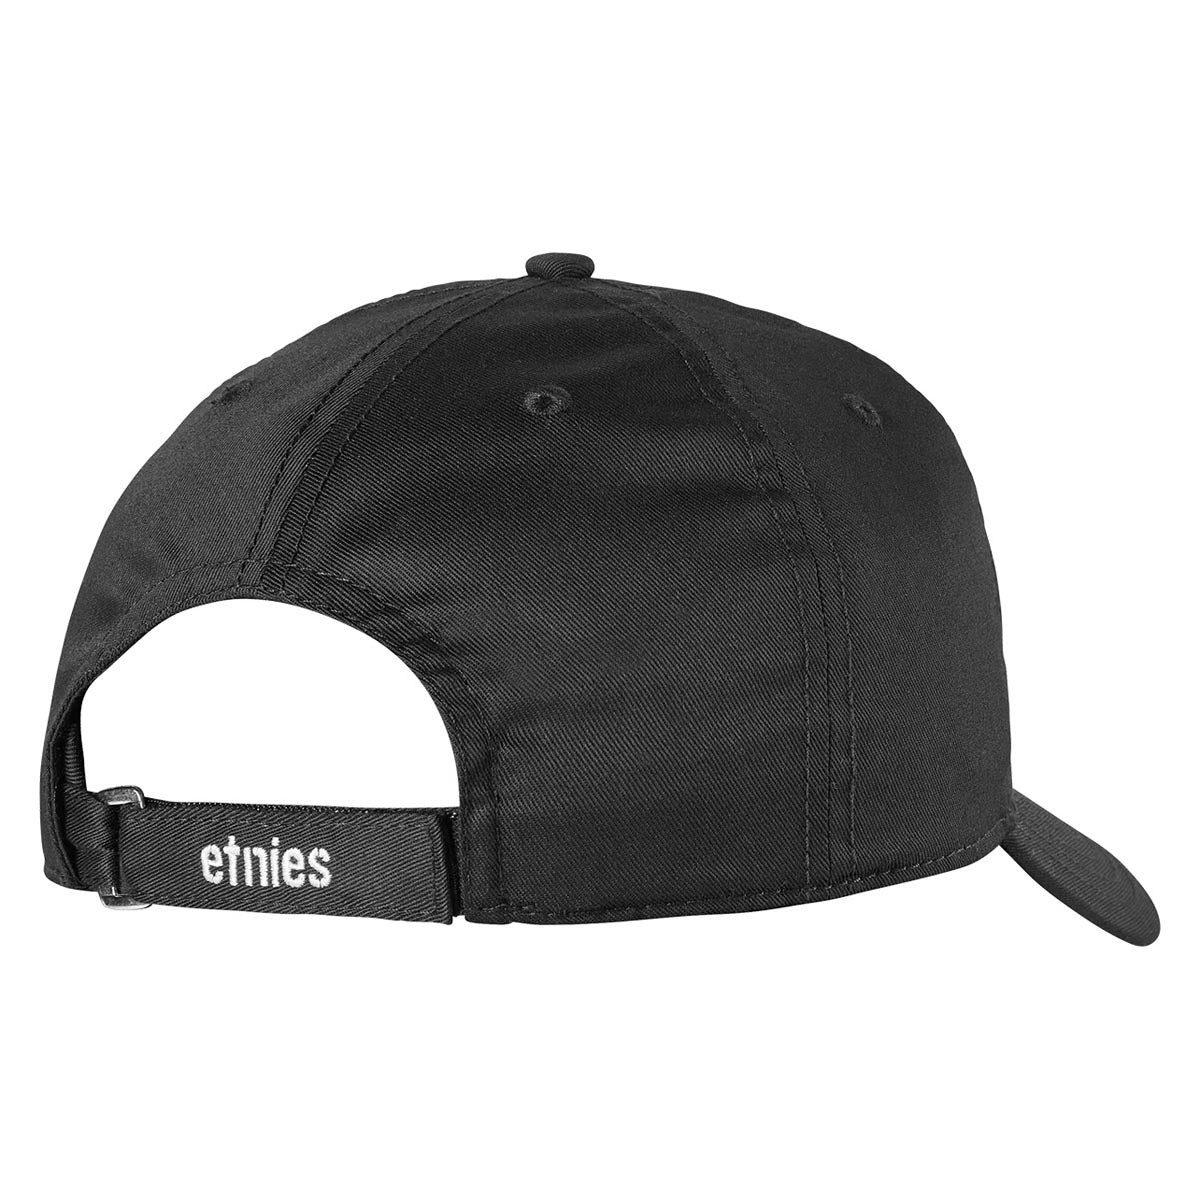 Etnies AG Snapback Hat - Black image 2